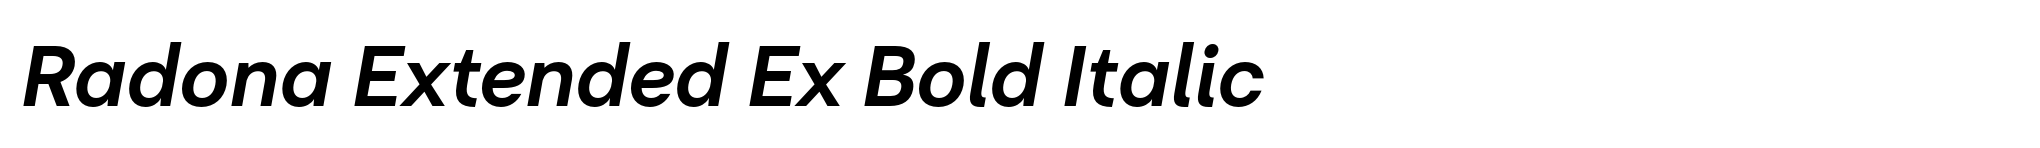 Radona Extended Ex Bold Italic image